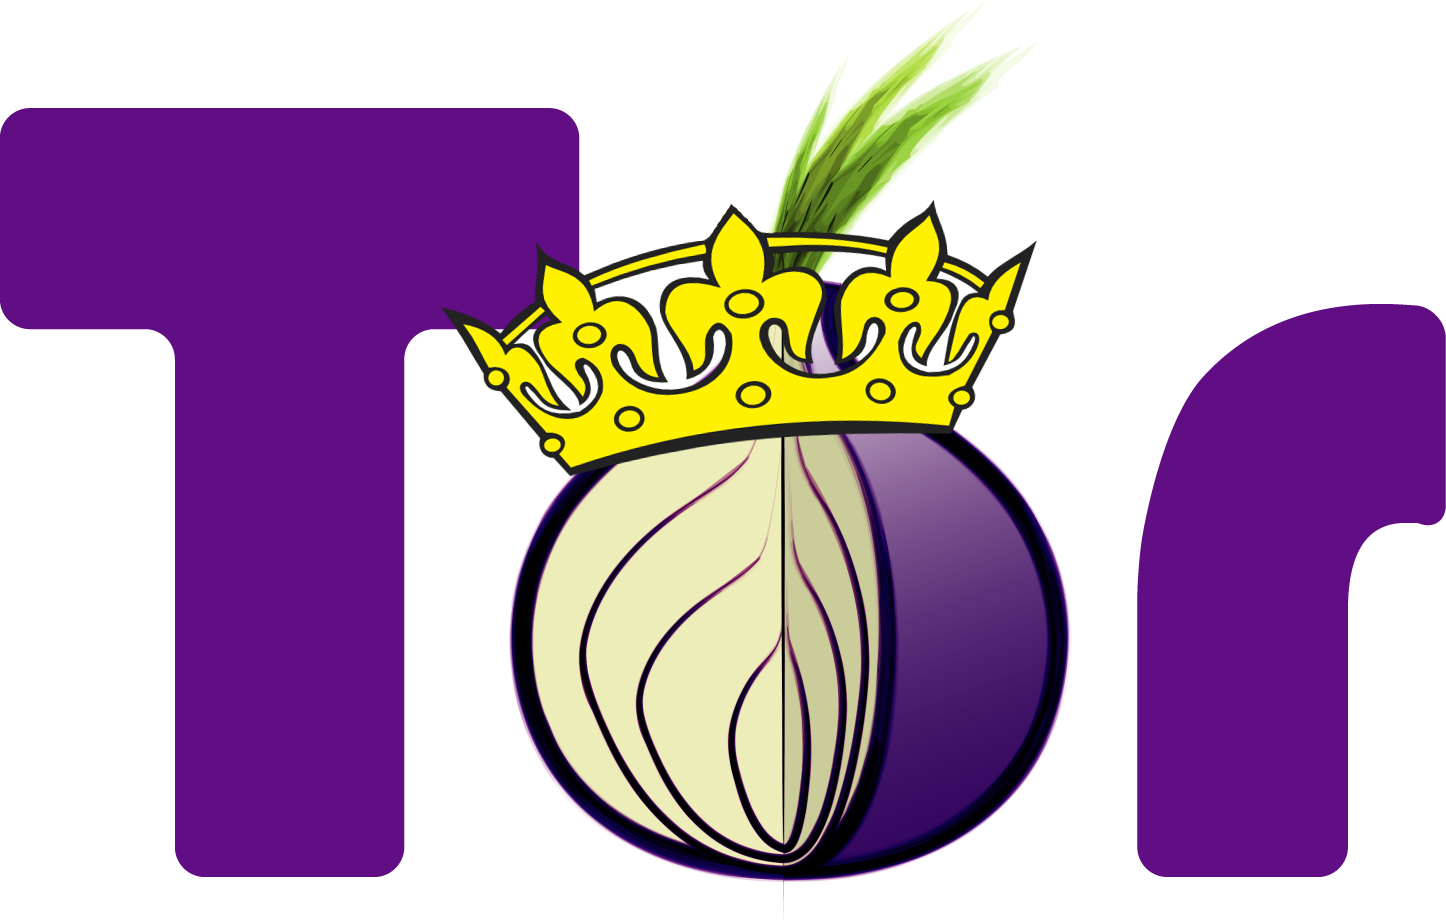 Au descoperit o versiune falsă a Rusiei Tor care a furat bitcoini și Qiwi